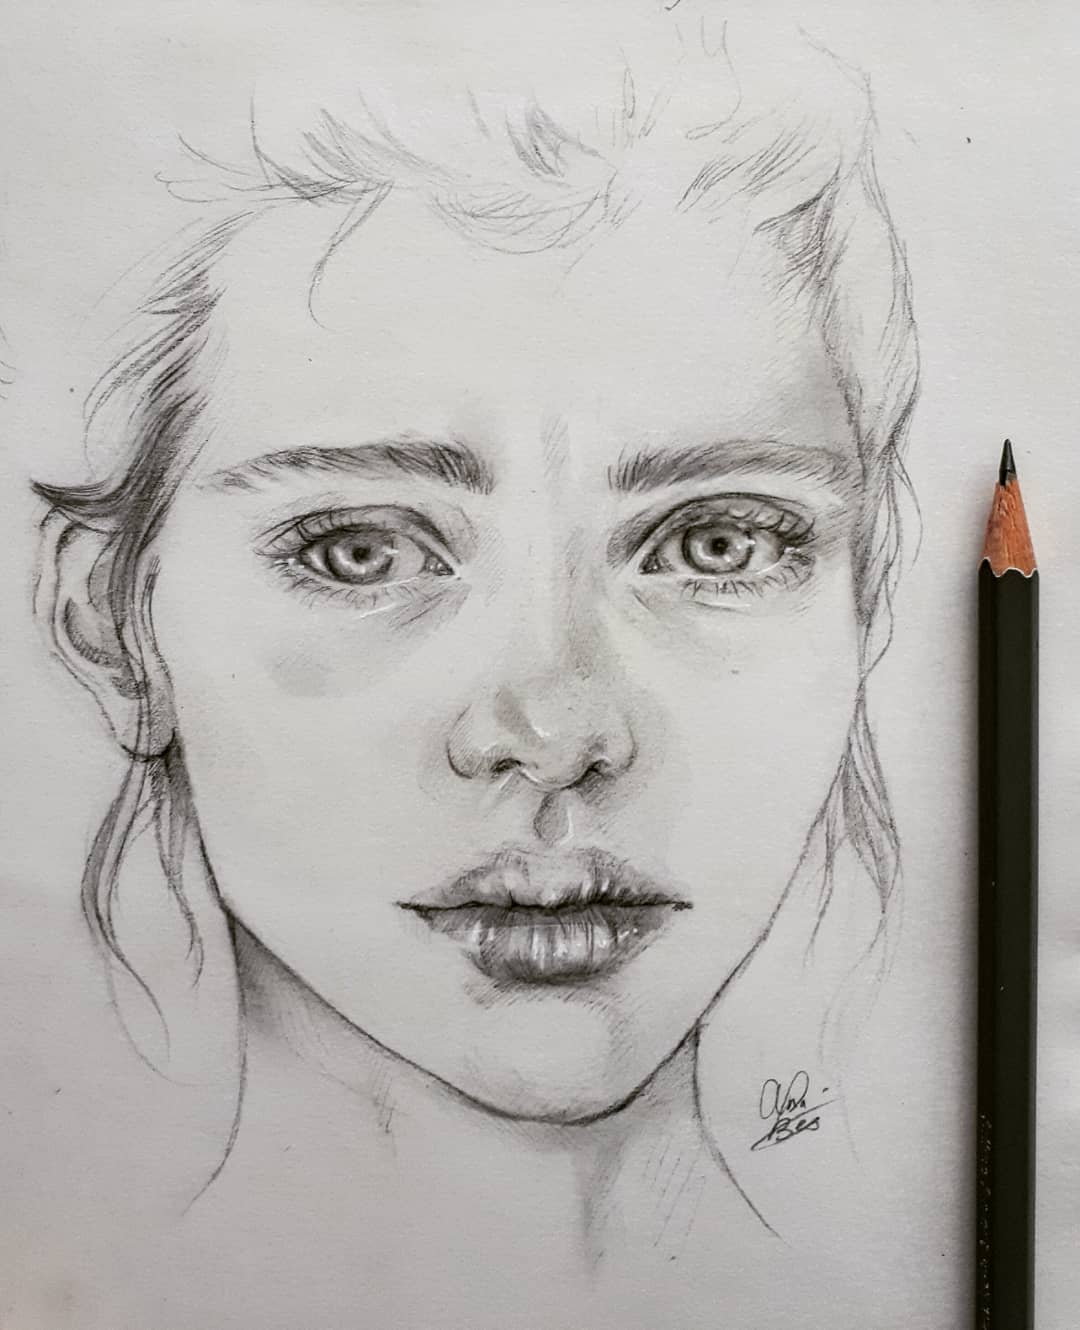 Pencil Sketch Artist: Annelies Bes